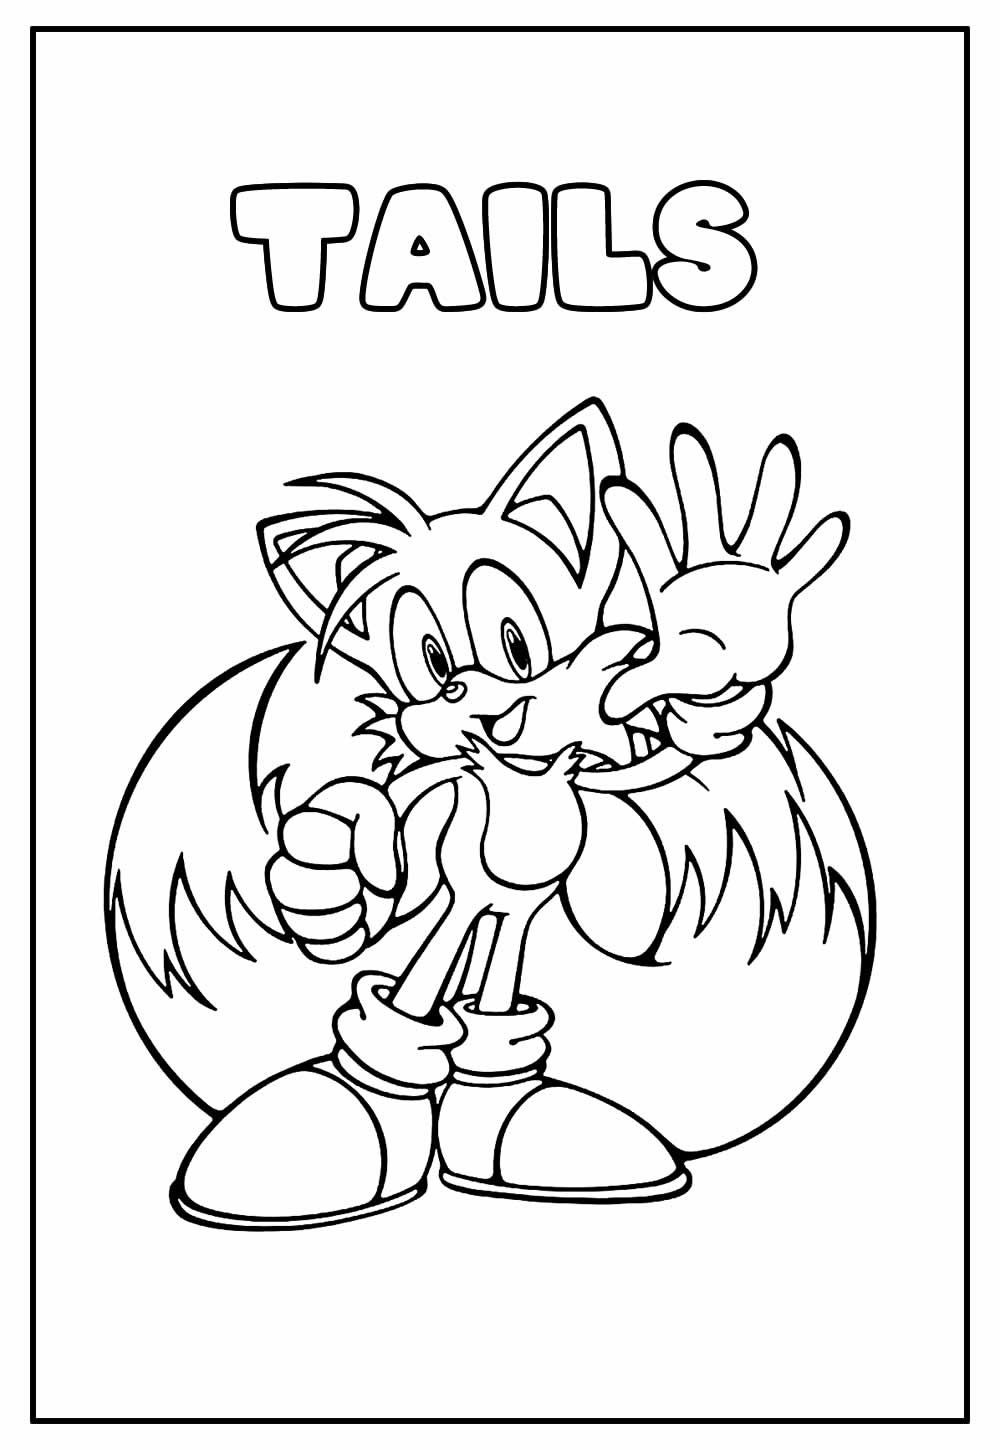 Desenho para colorir de Tails - Imagem Educativa